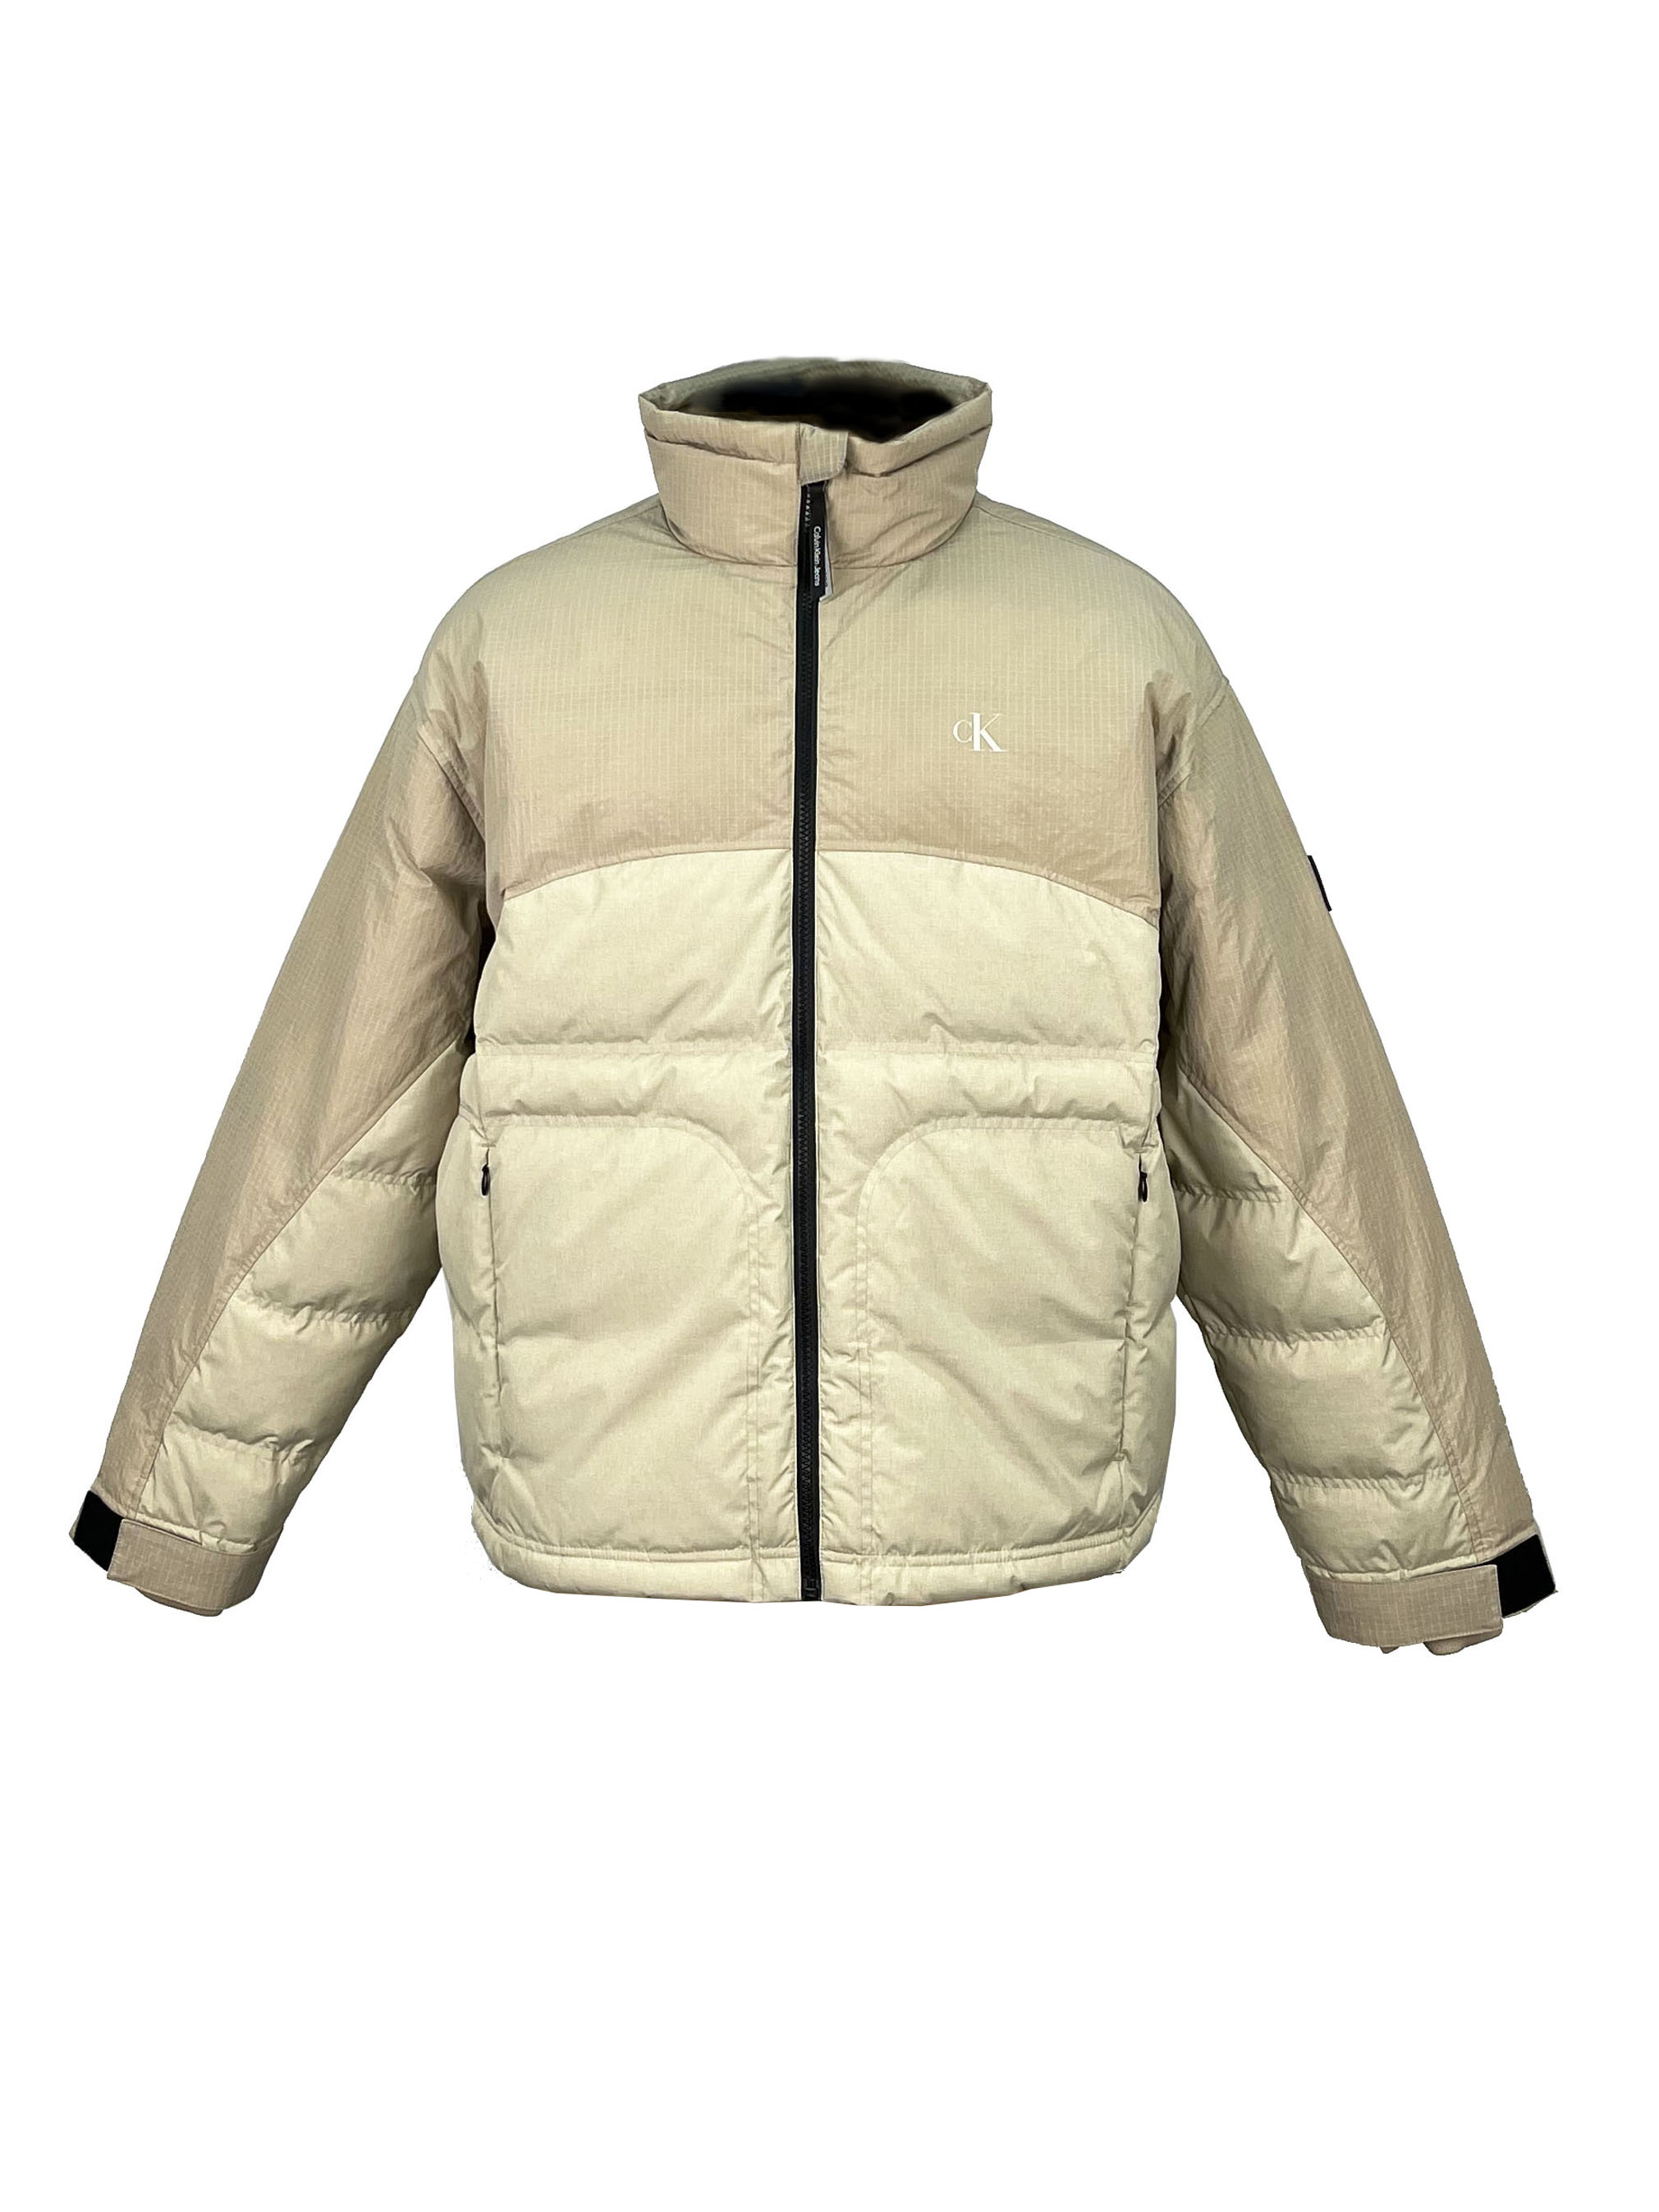 4.padded jacket.(1)